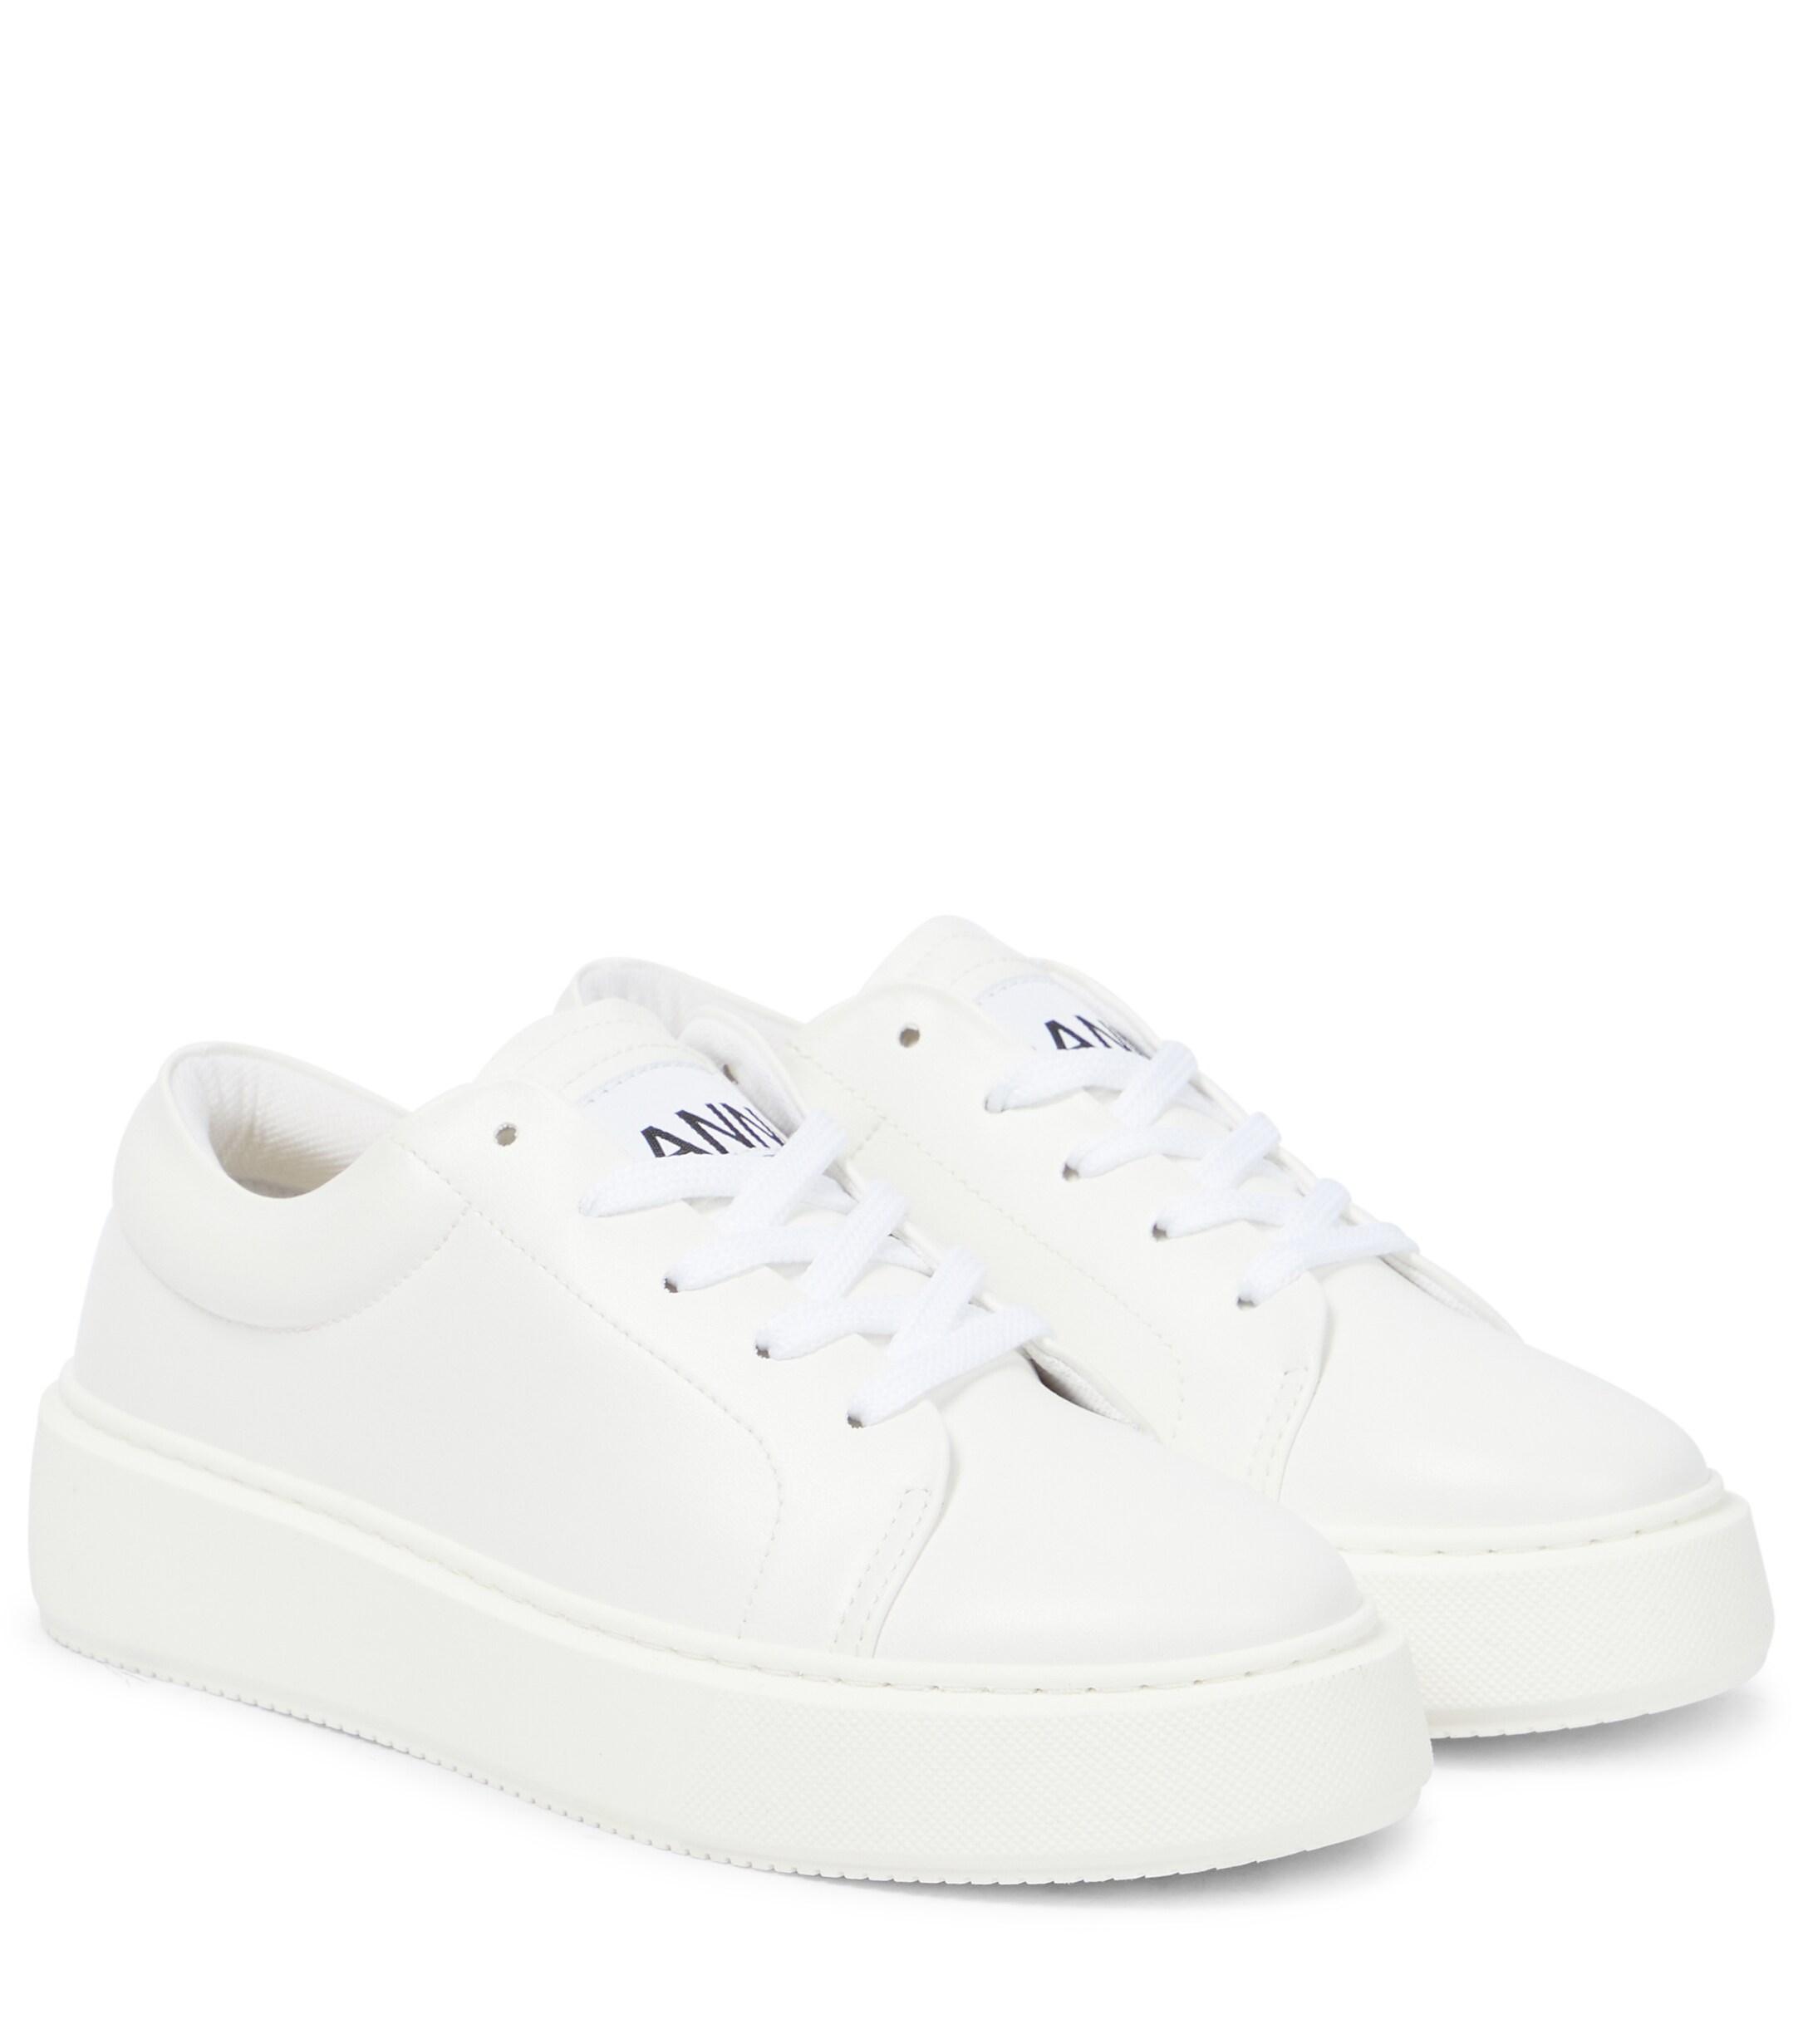 Ganni Vegeatm Sneakers in White | Lyst UK